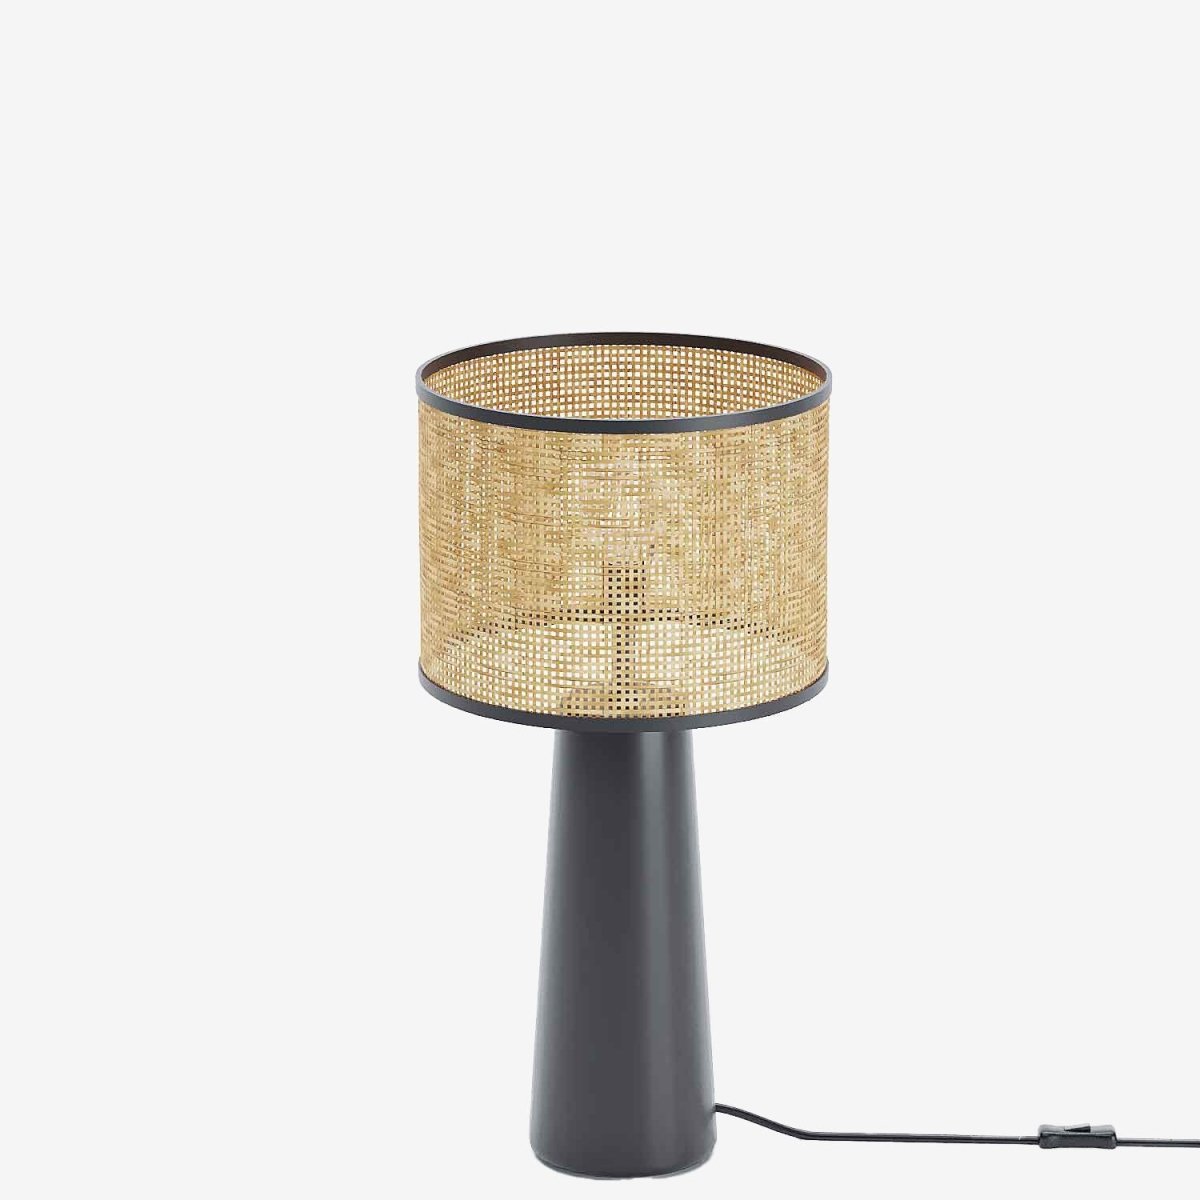 Lampe de table céramique vintage élégante, noire et rotin - Potiron Paris, le luminaire design de la décoration d'intérieur chic et moderne